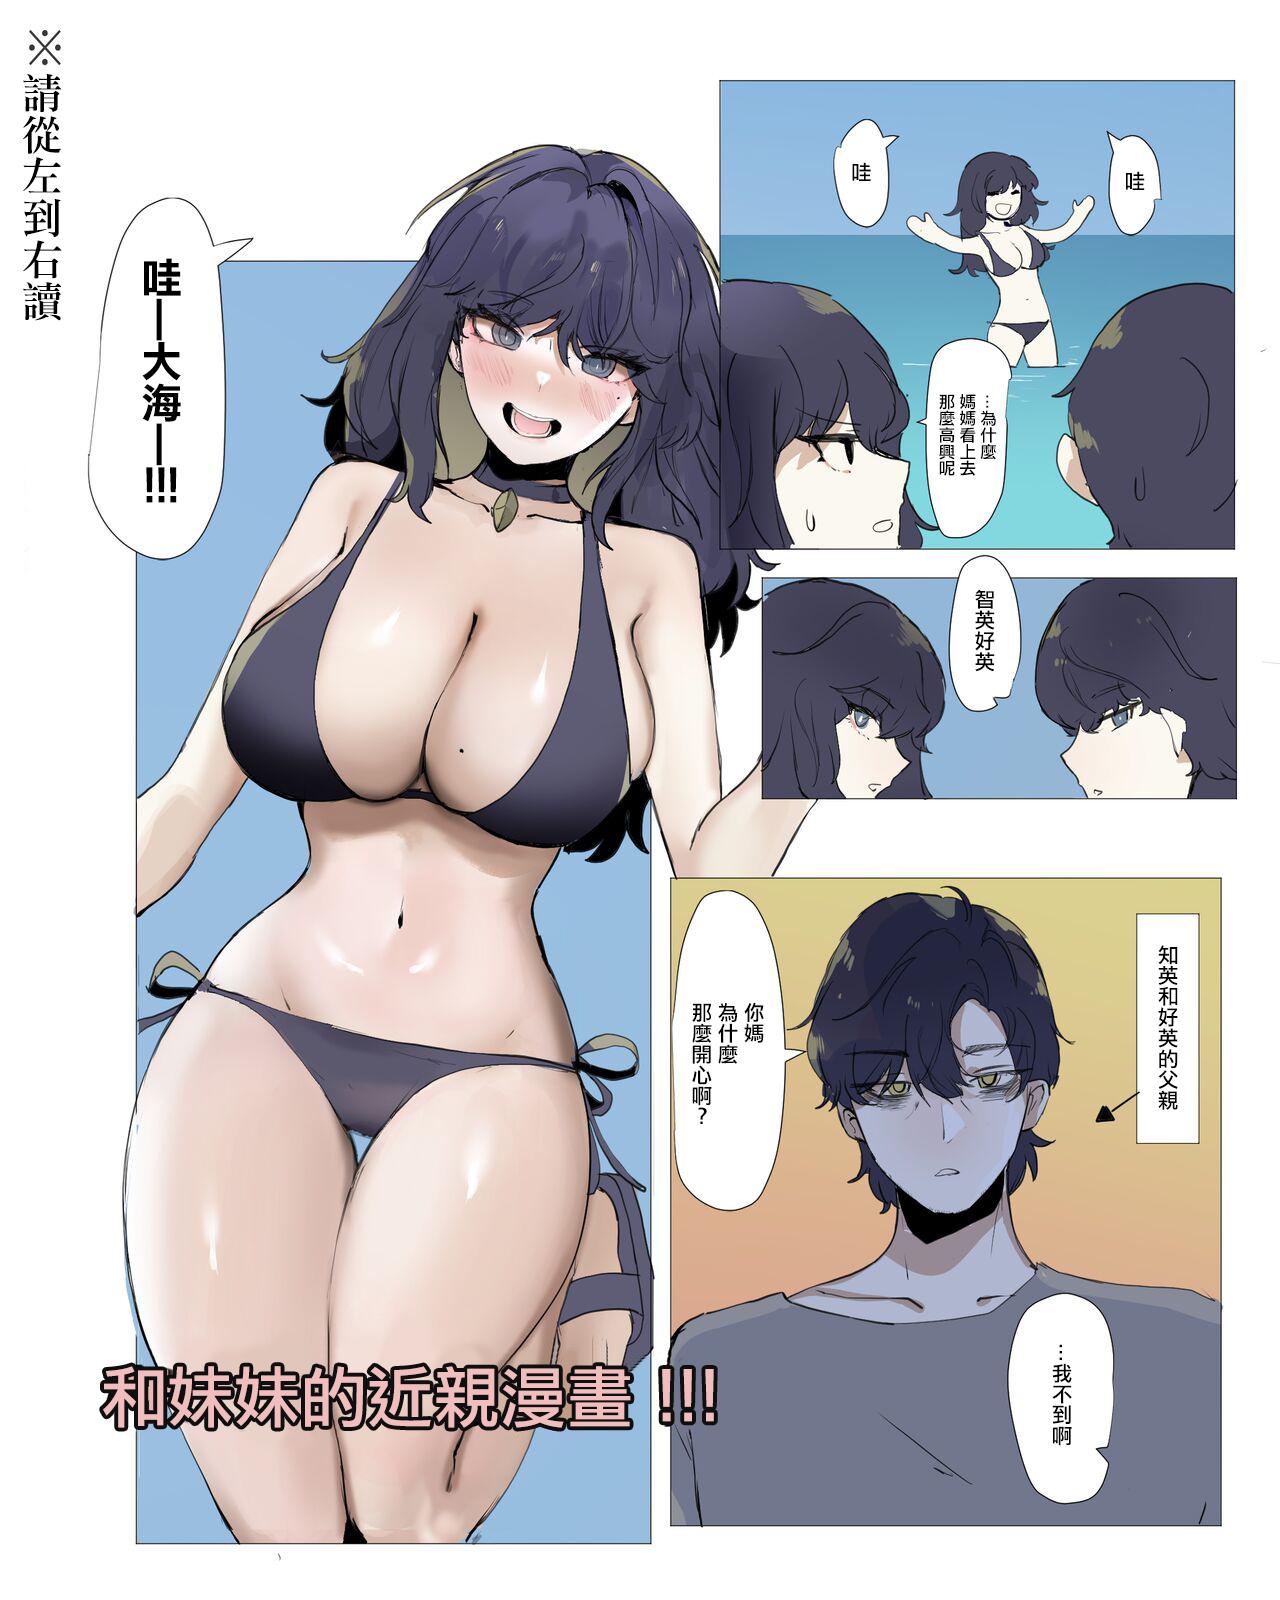 Imouto to Kinshin Suru Manga 5 0